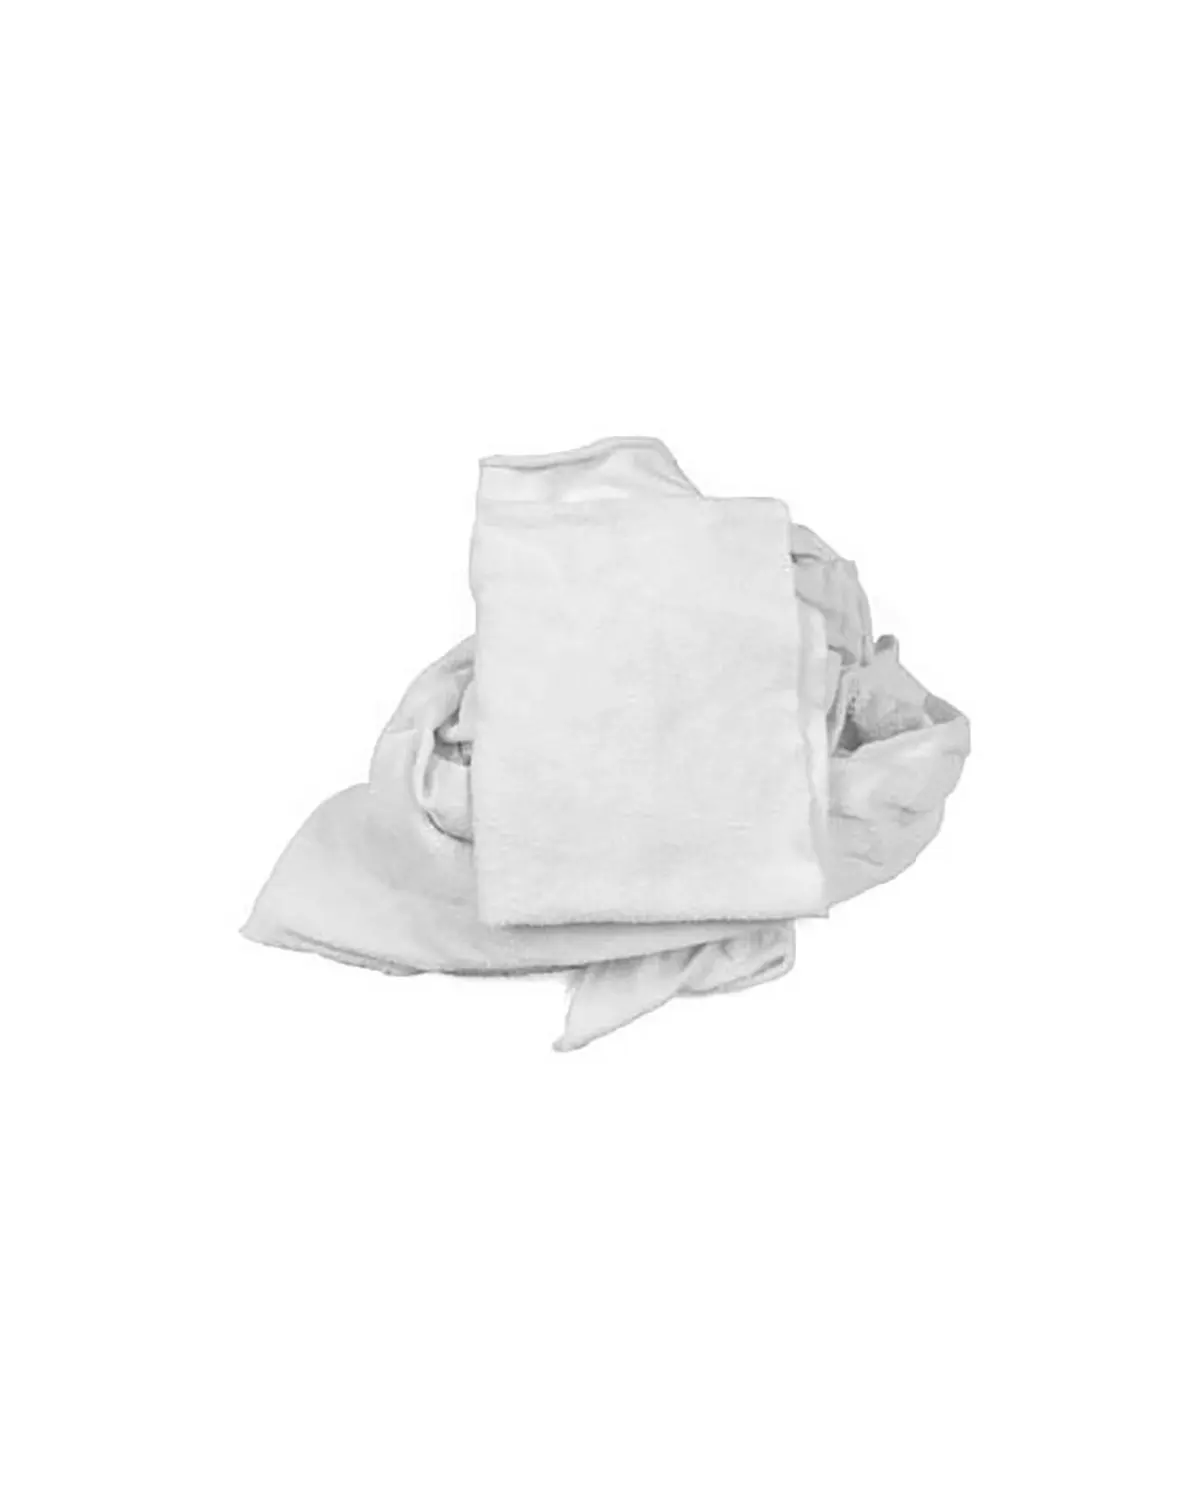 ที่มีคุณภาพสูงเช็ดผ้าขี้ริ้วผ้าฝ้ายสีขาวสำหรับทำความสะอาดราคาไม่แพง